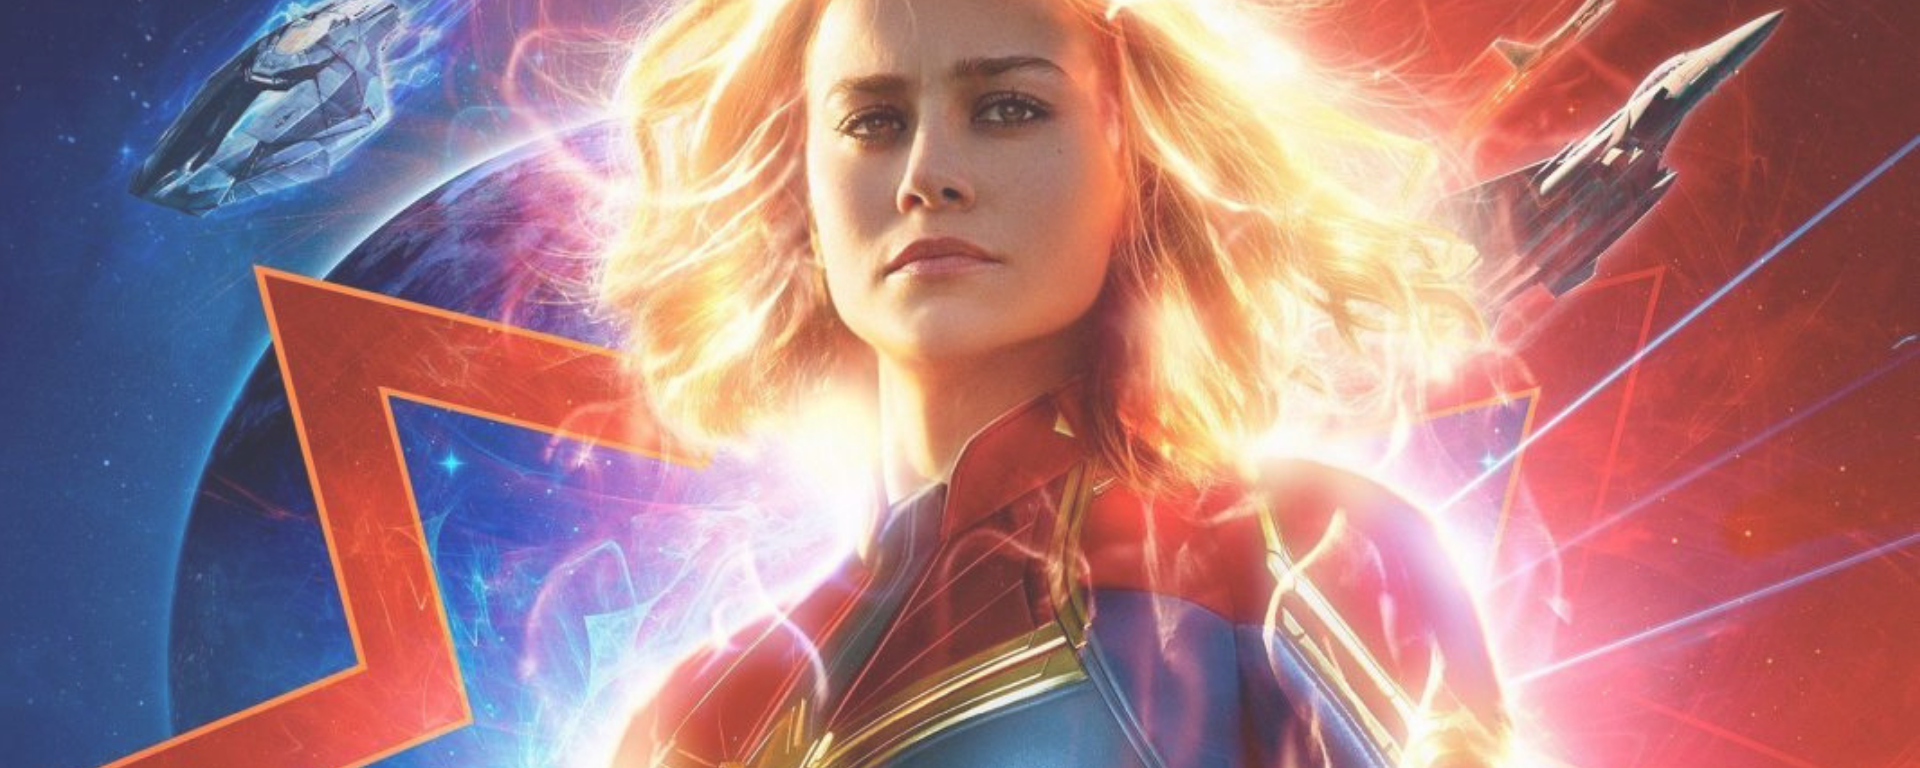 Captain Marvel poster of Brie Larson